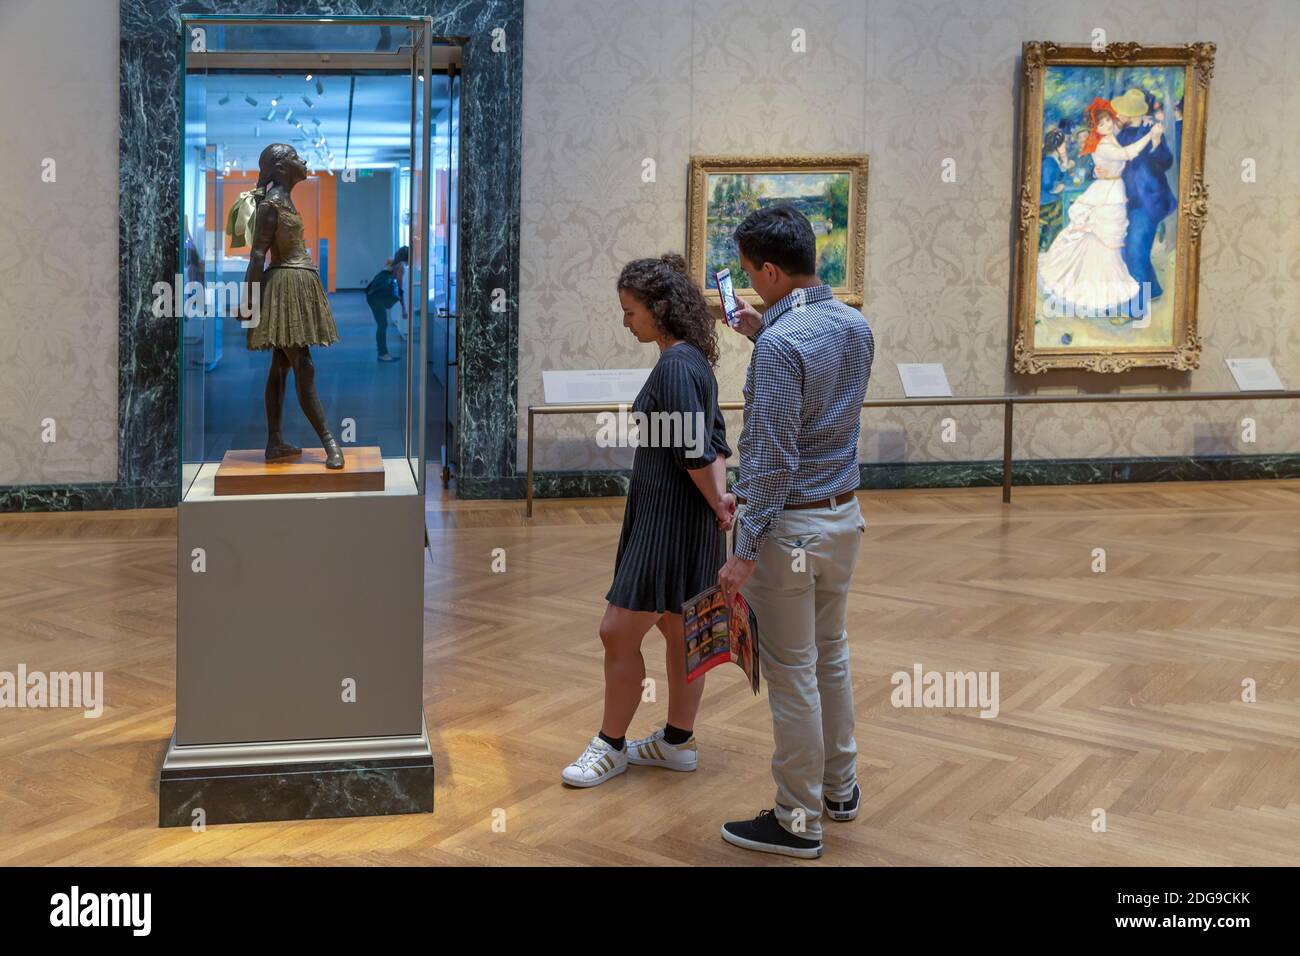 Pareja joven admirar la Pequeña bailarina de 14 años de edad, Edgar Degas, 1888, Museum of Fine Arts, Boston, Mass, Estados Unidos, América del Norte Foto de stock